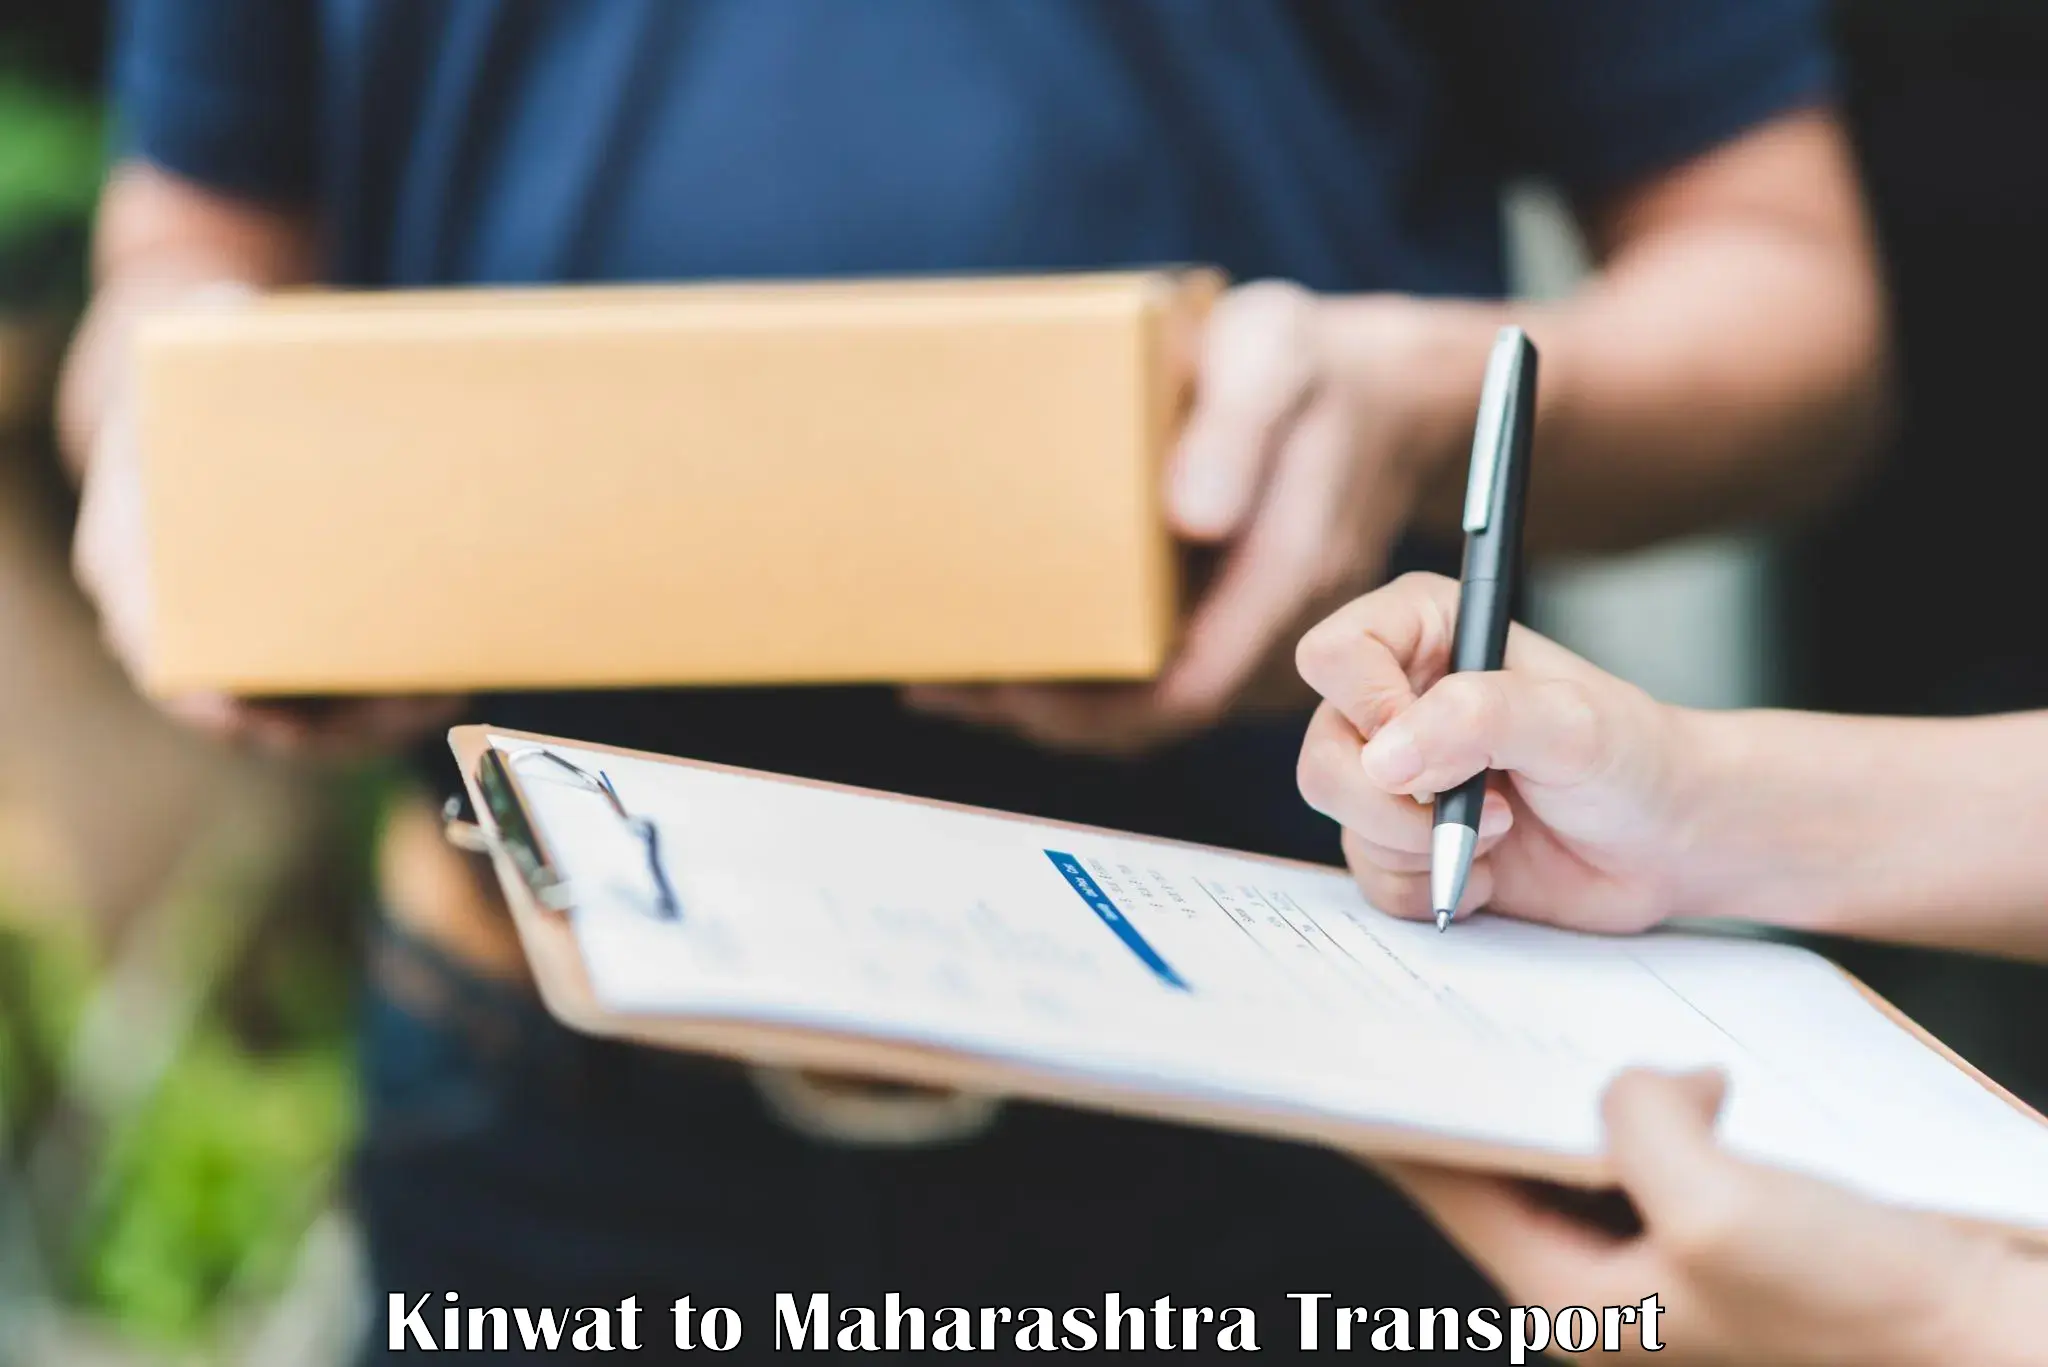 Express transport services Kinwat to Pandharkawada